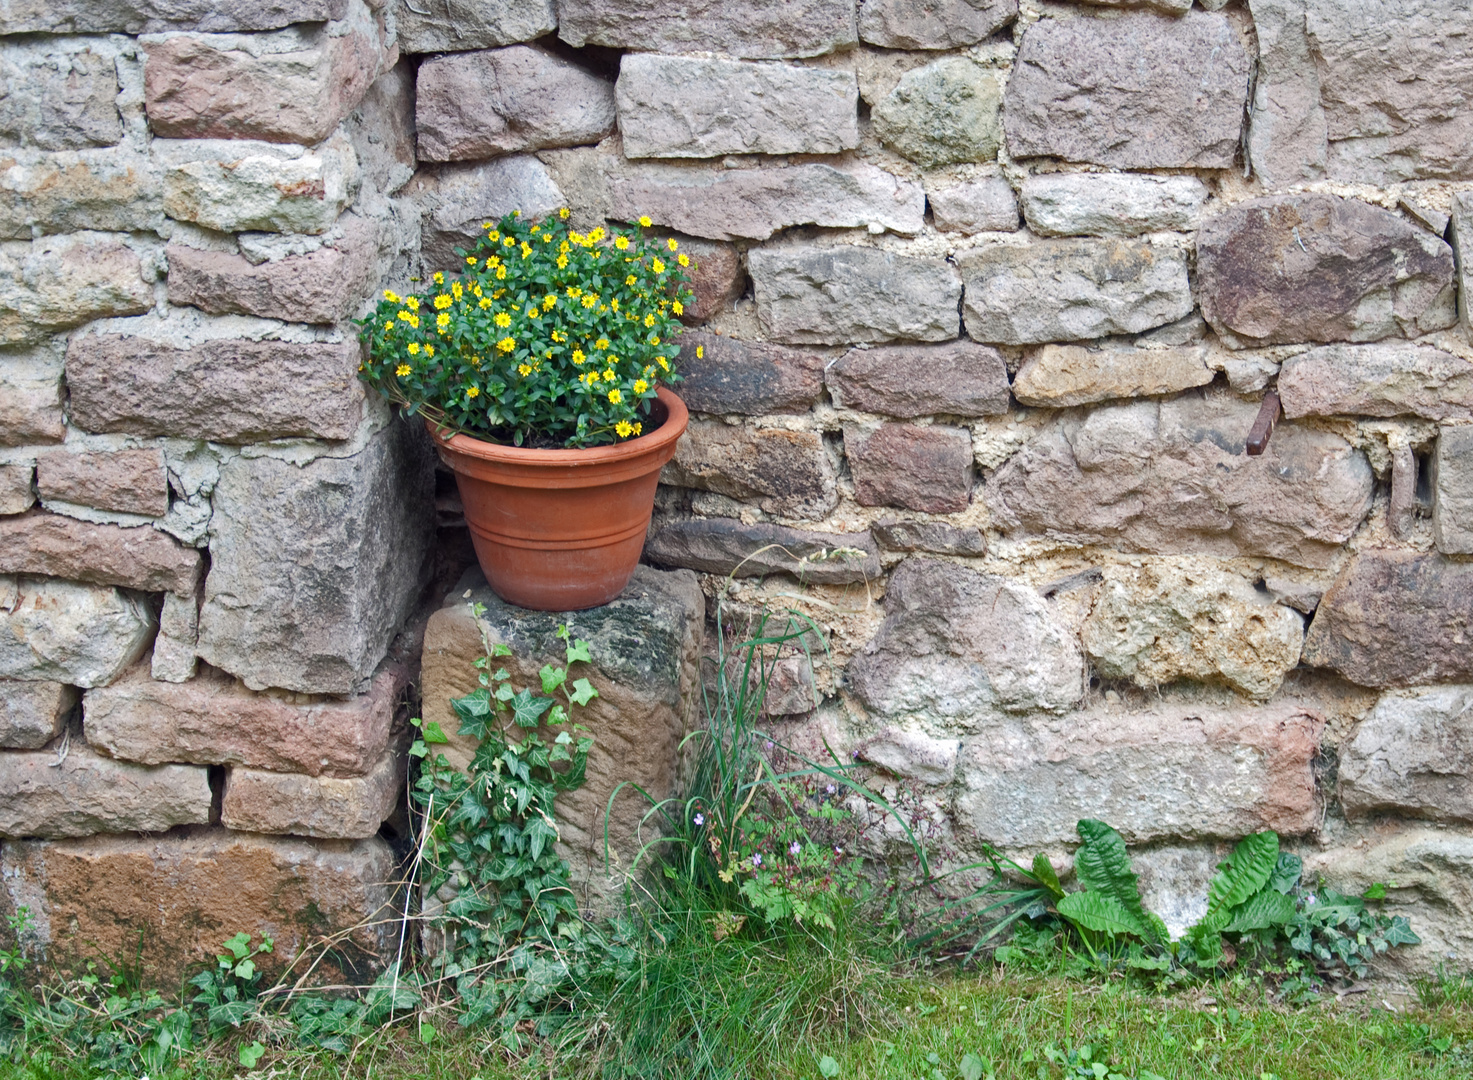 Blume in Topf vor Natursteinmauer